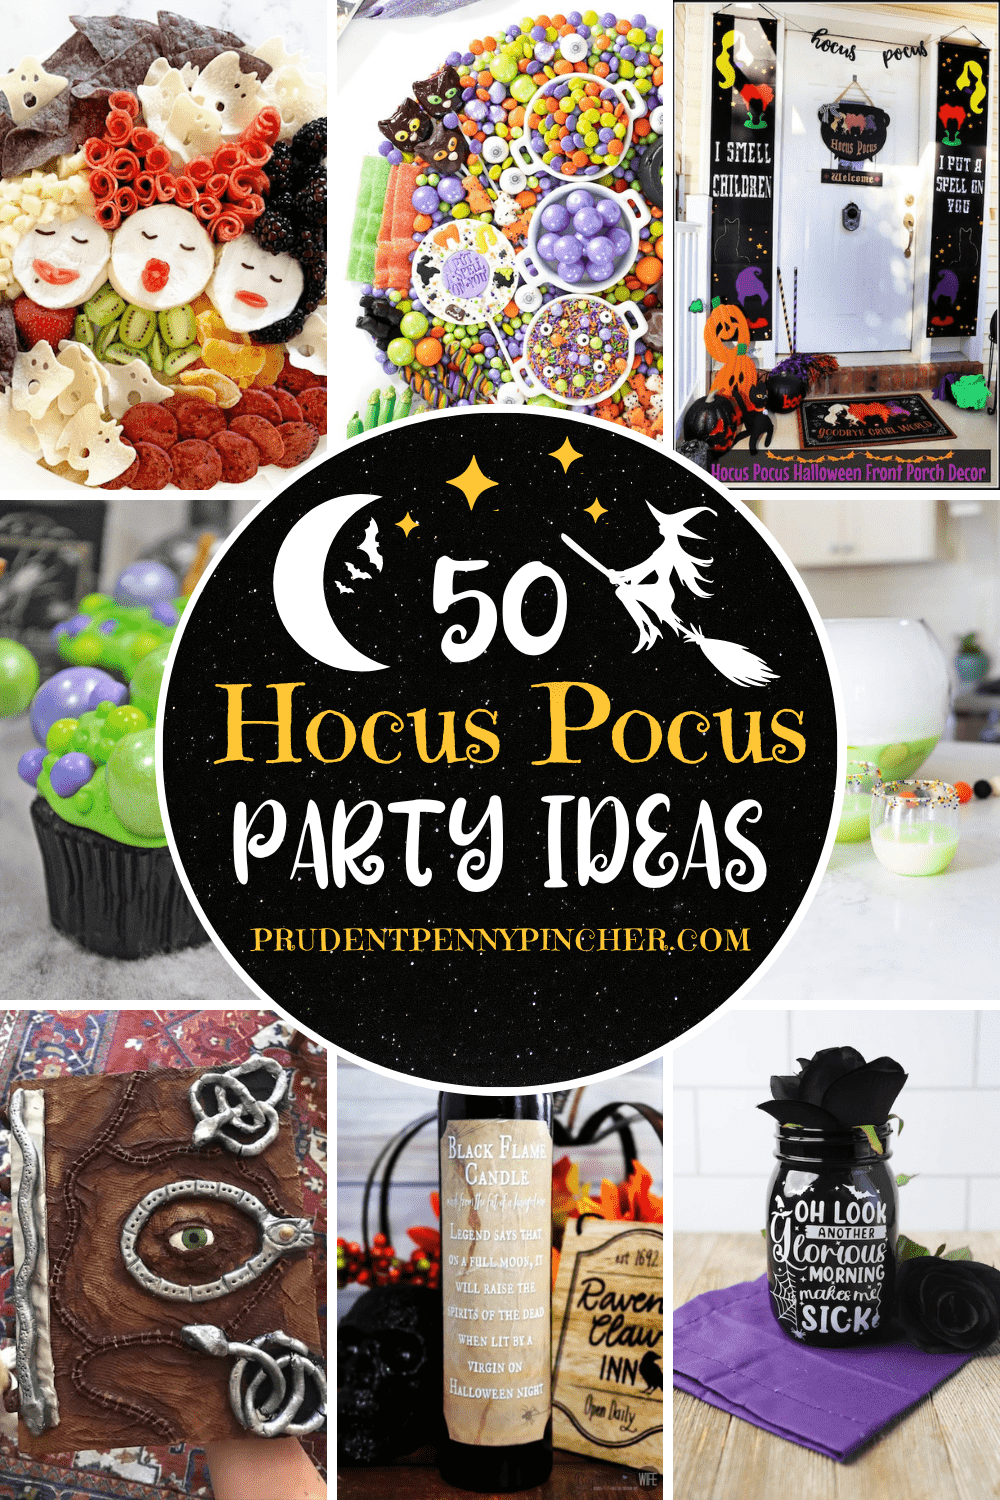 Hocus Pocus party ideas